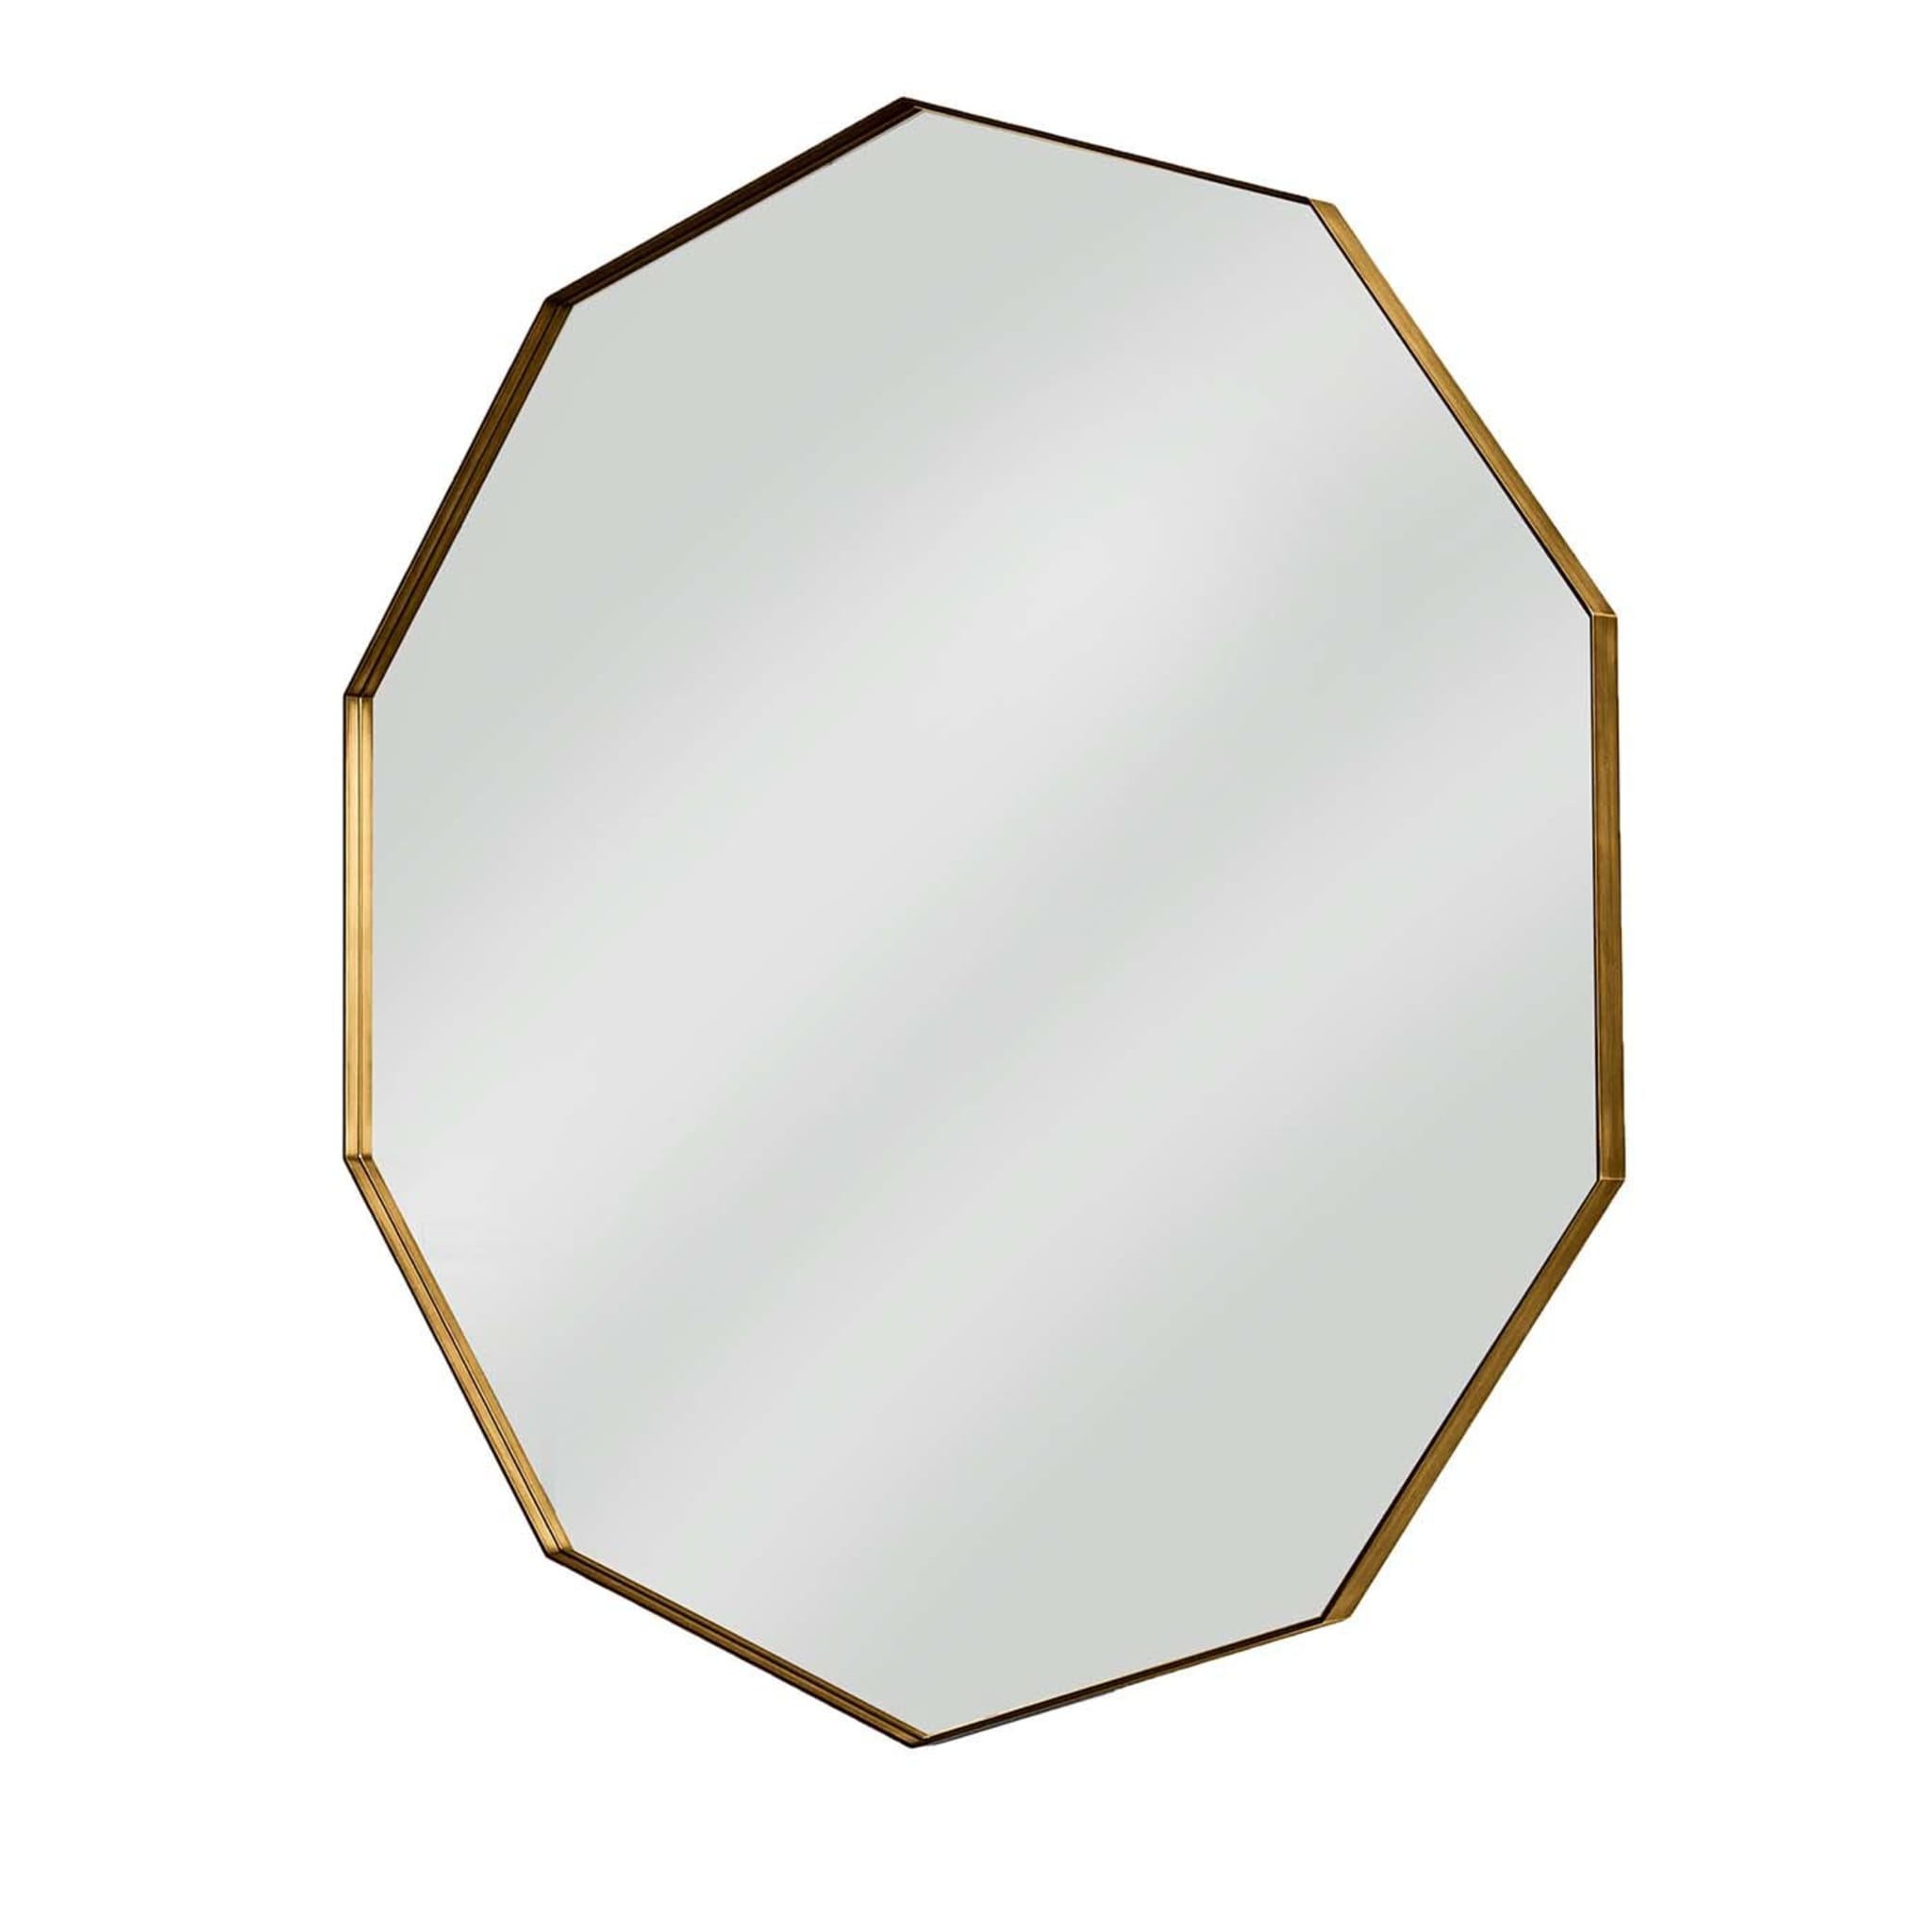 Visual Decagonal Brass Mirror - Main view